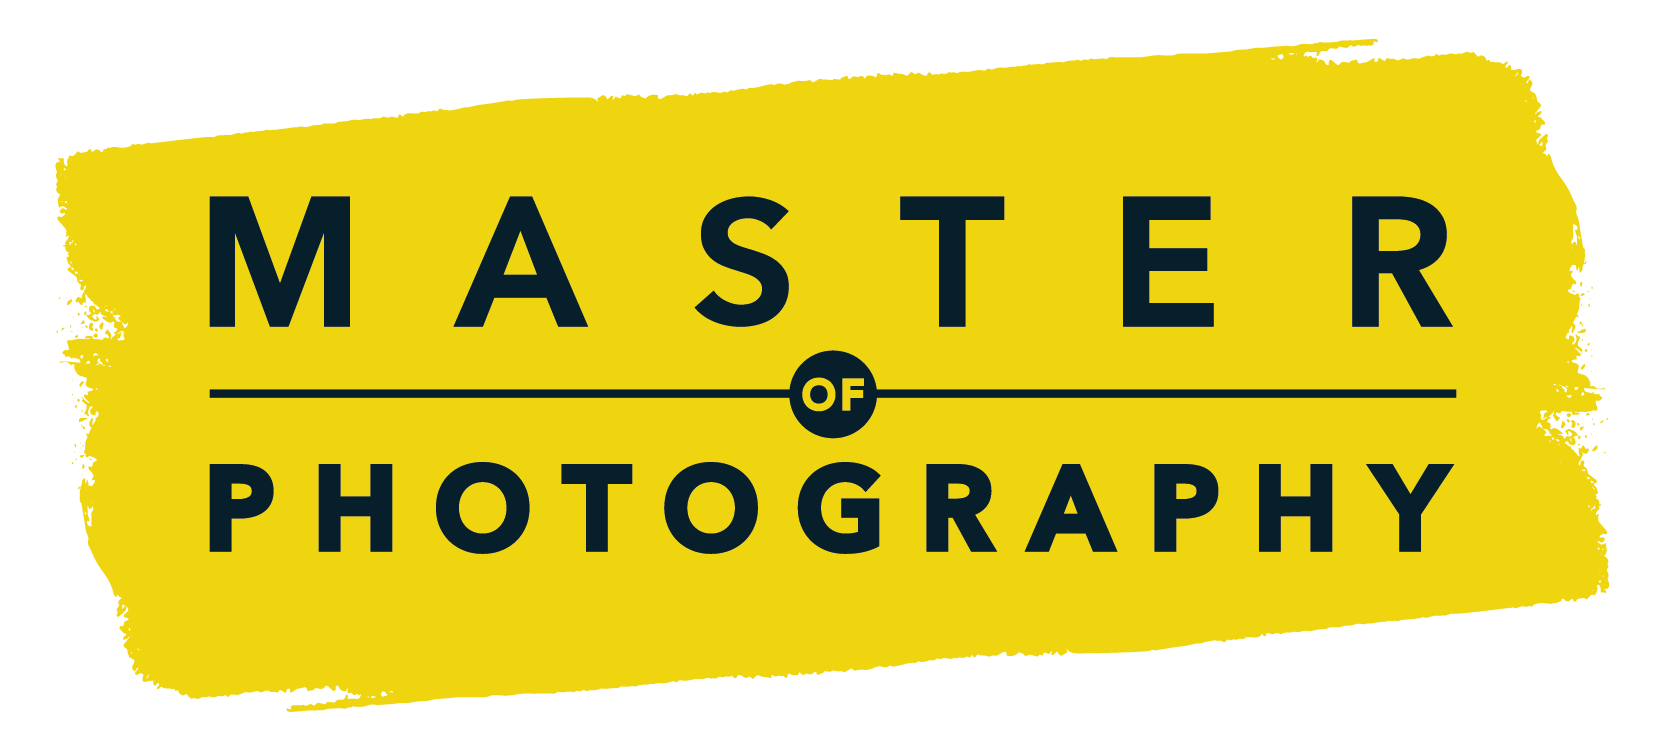 Master of Photography - logo